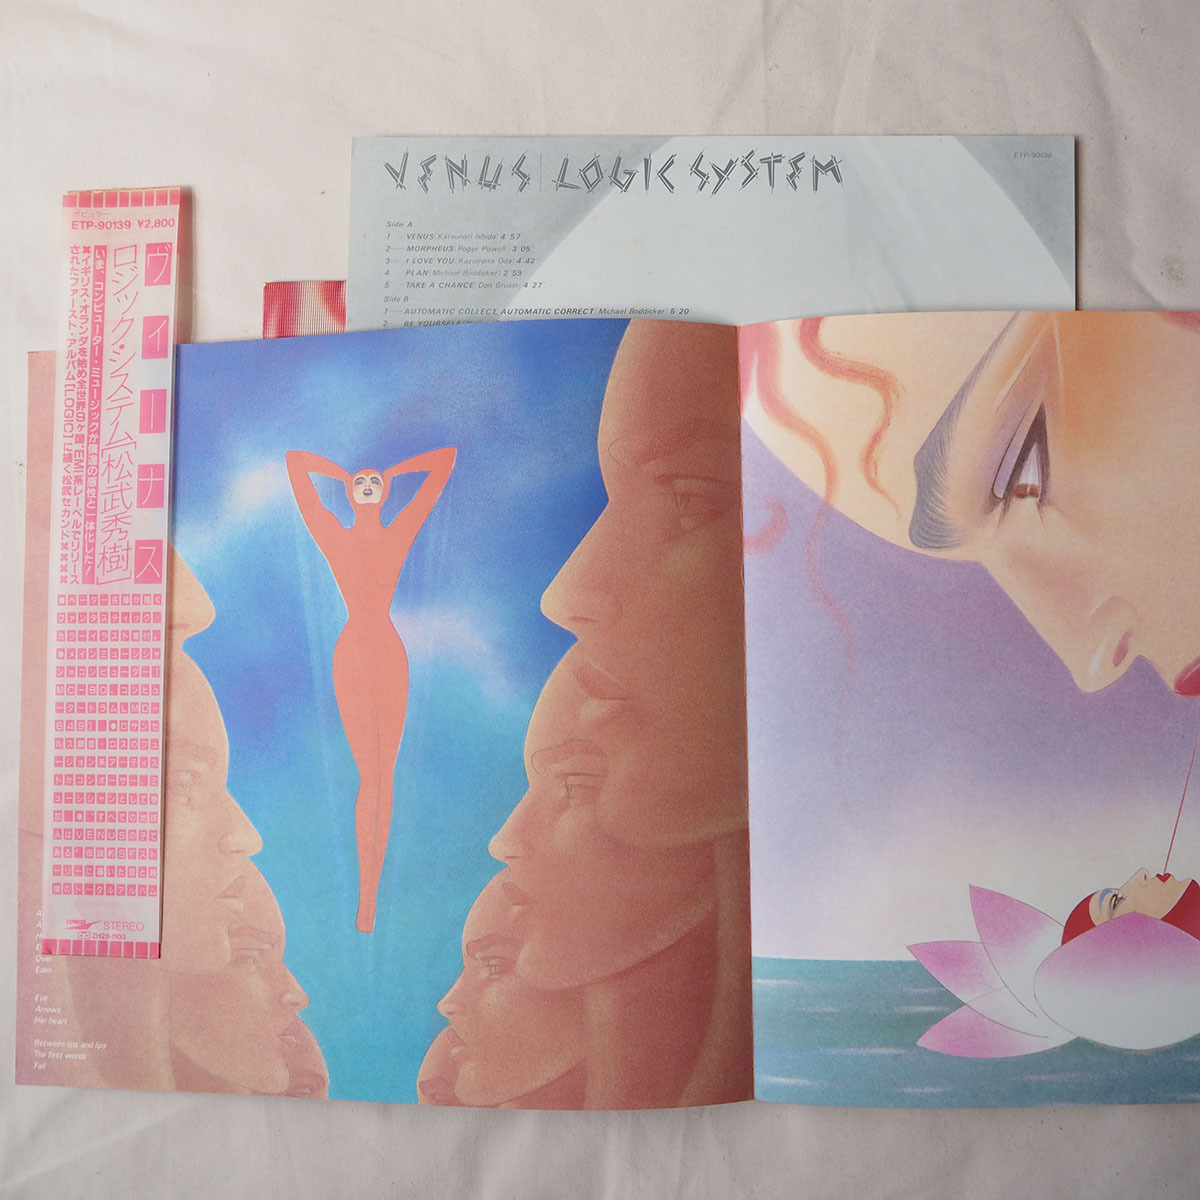 ◆ 松武秀樹 Logic System / Venus 1981年 Hideki Matsutake シンセサイザー音楽 ペーター佐藤 送料無料 ◆_画像3